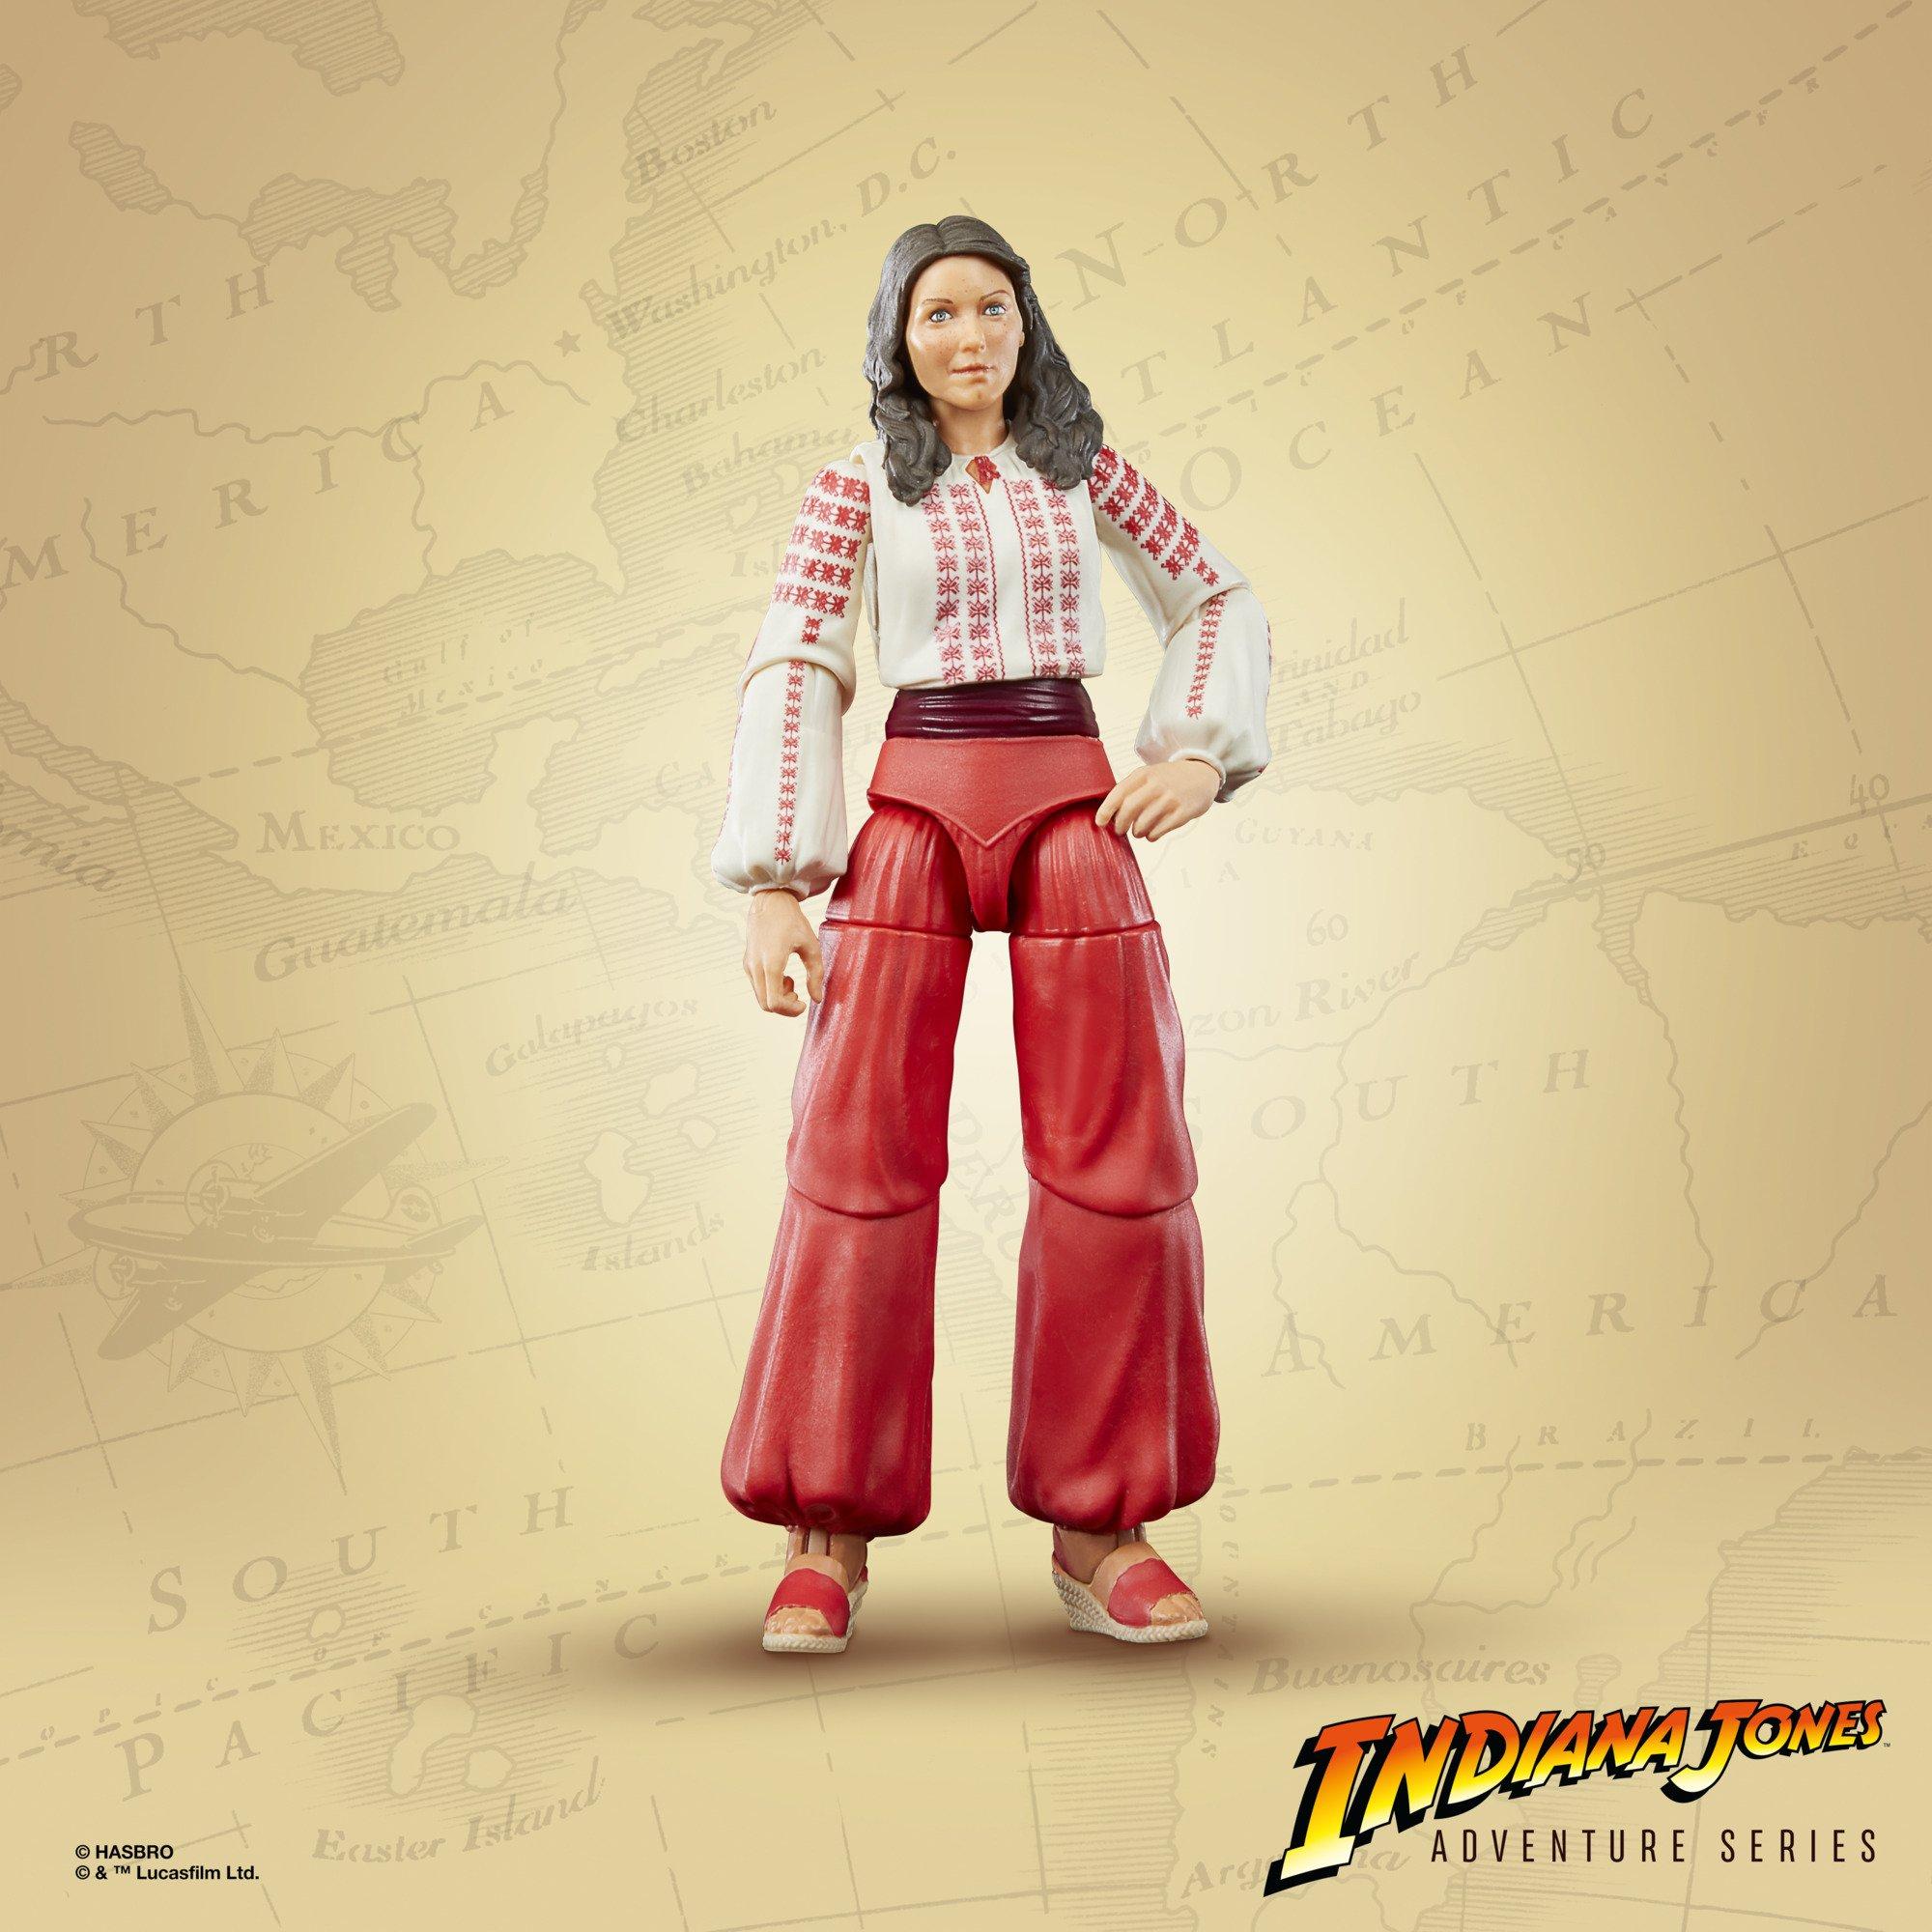 Hasbro Indiana Jones Adventure Series  Marion Ravenwood (Build an Artifact) 6-in Action Figure